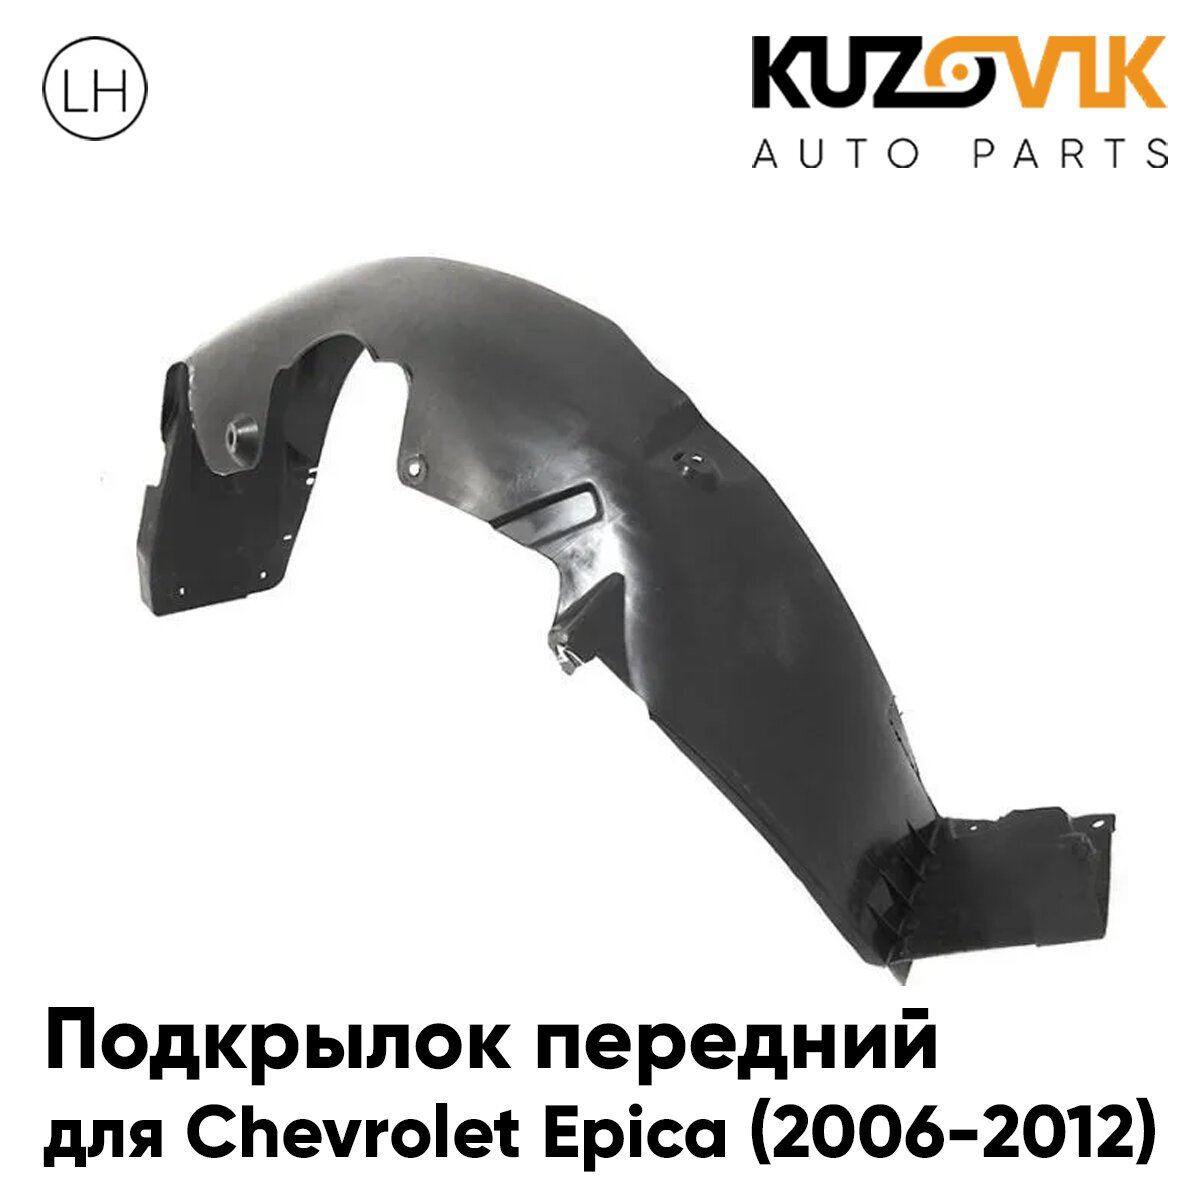 Подкрылок передний для Шевроле Эпика Chevrolet Epica (2006-2012) левый